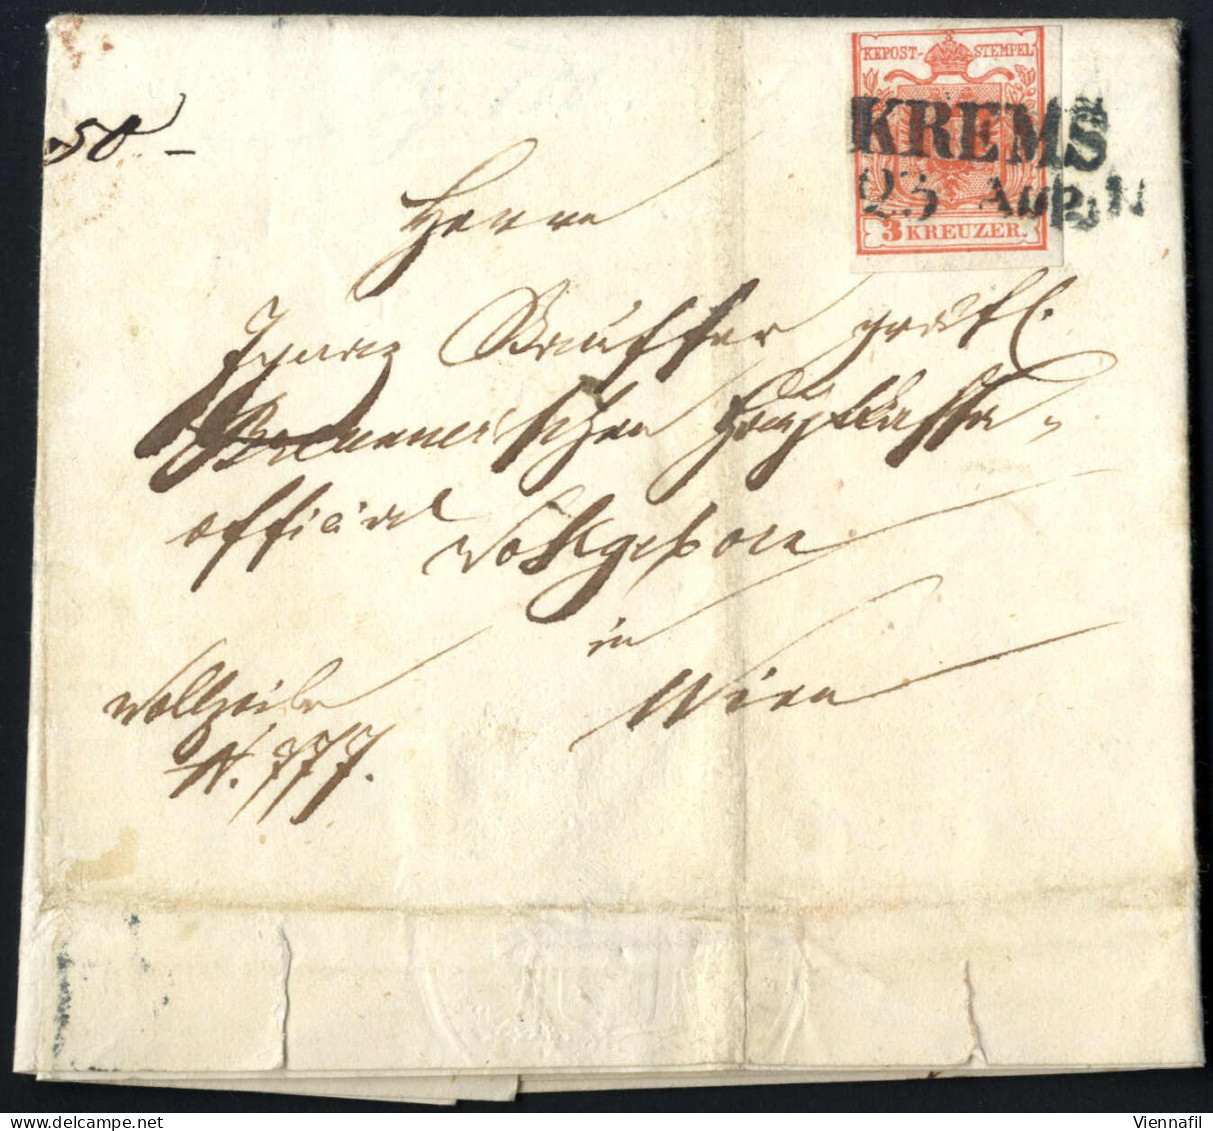 cover 1850/1907, 10 Lose früherer Auktionen, Briefe auch seltenere Stempel und Auslandsbriefe in die Levante, 2 eingesch